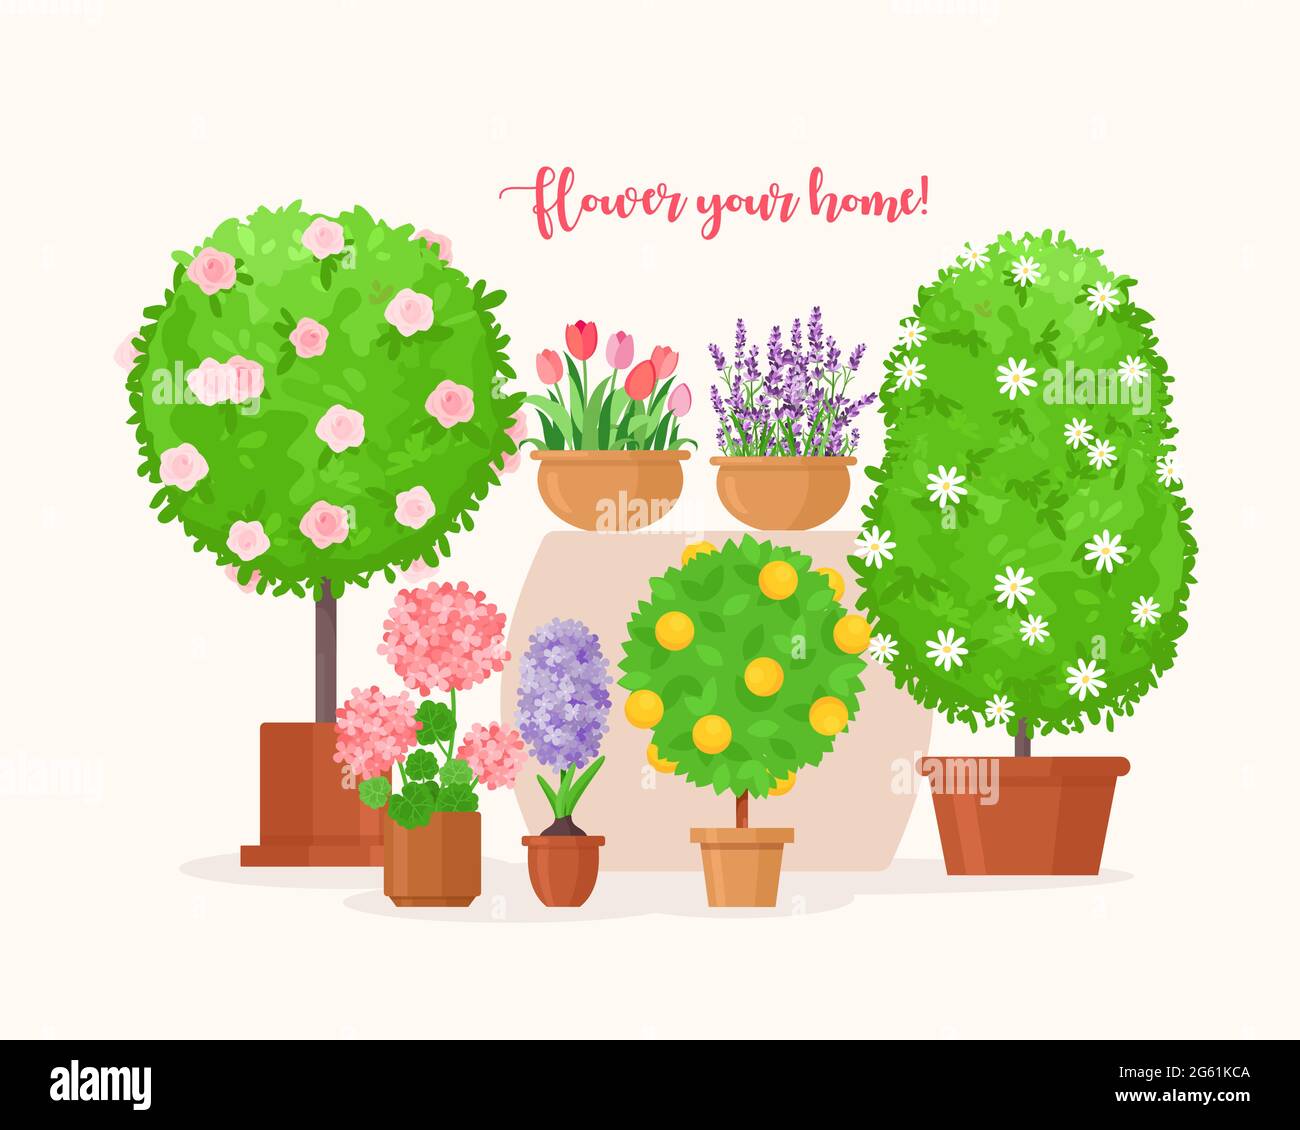 Home giardino illustrazione vettoriale, cartoon verde piatto frutta tropicale albero e pianta casa biologica in vaso, lavanda o tulipano fiore per balcone isolato Illustrazione Vettoriale